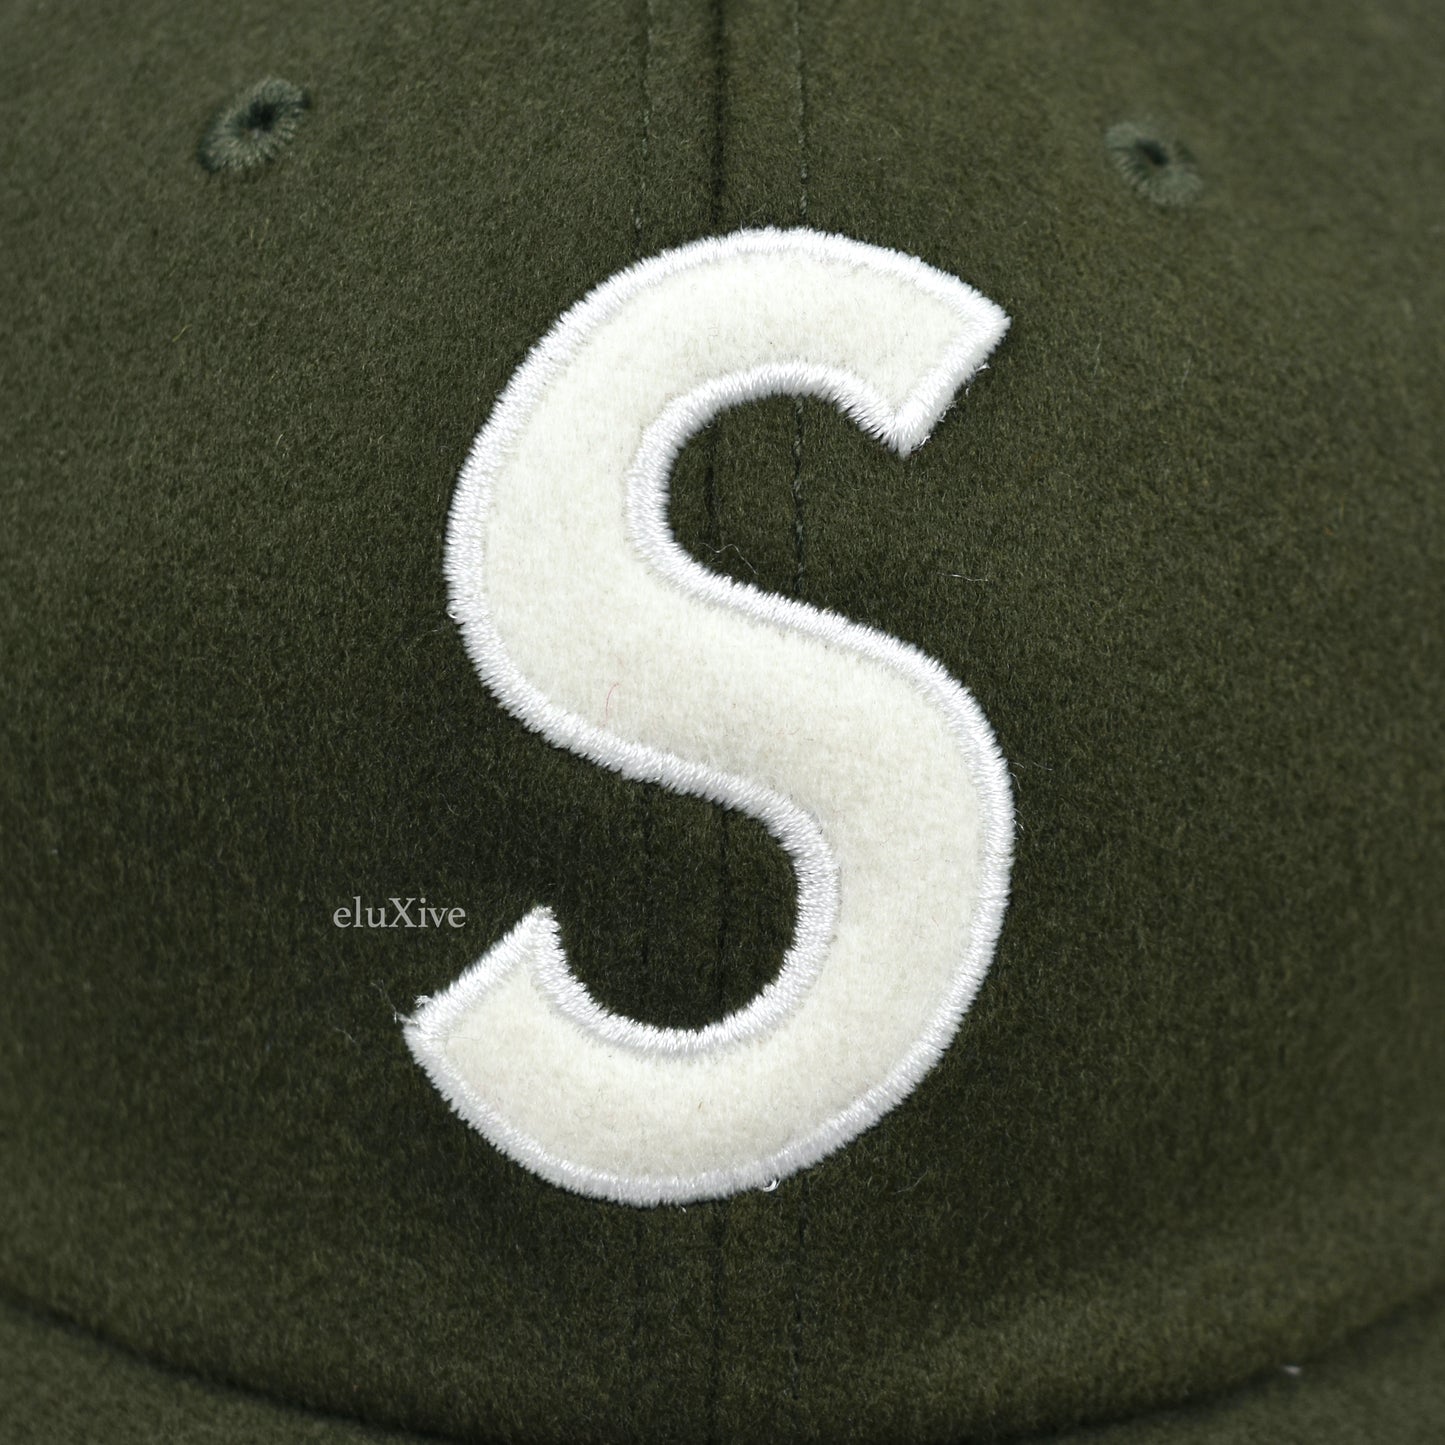 Supreme x Loro Piana - Wool S-Logo Hat (Olive)